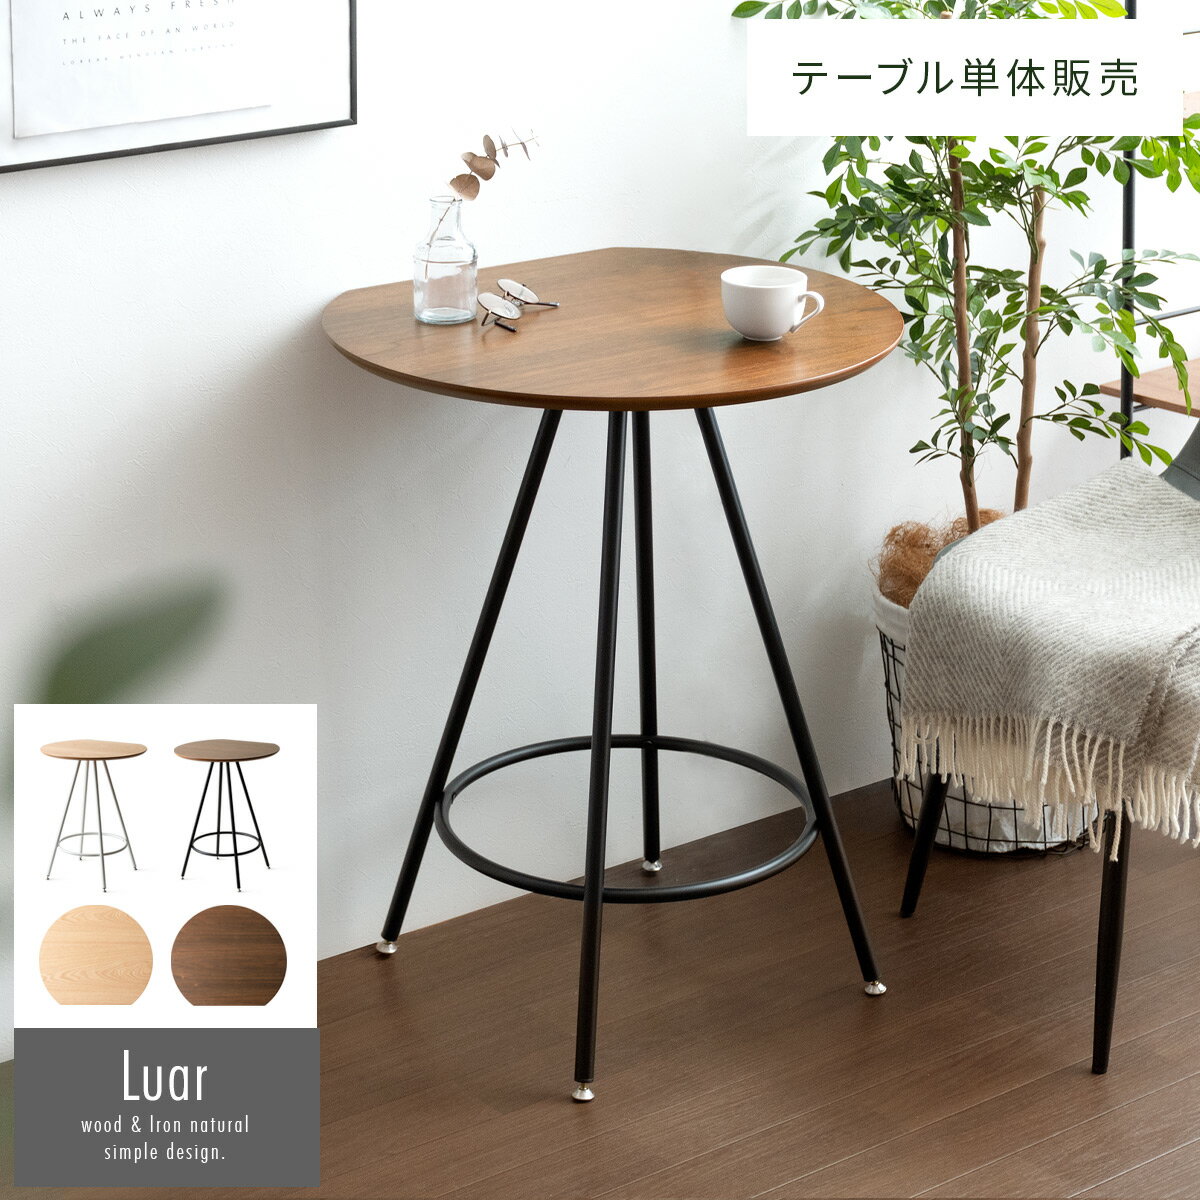 【ポイント20倍】ハイテーブル カフェテーブル 机 シャビーシック 木製 (ナチュラル) 店舗 施設 コントラクト